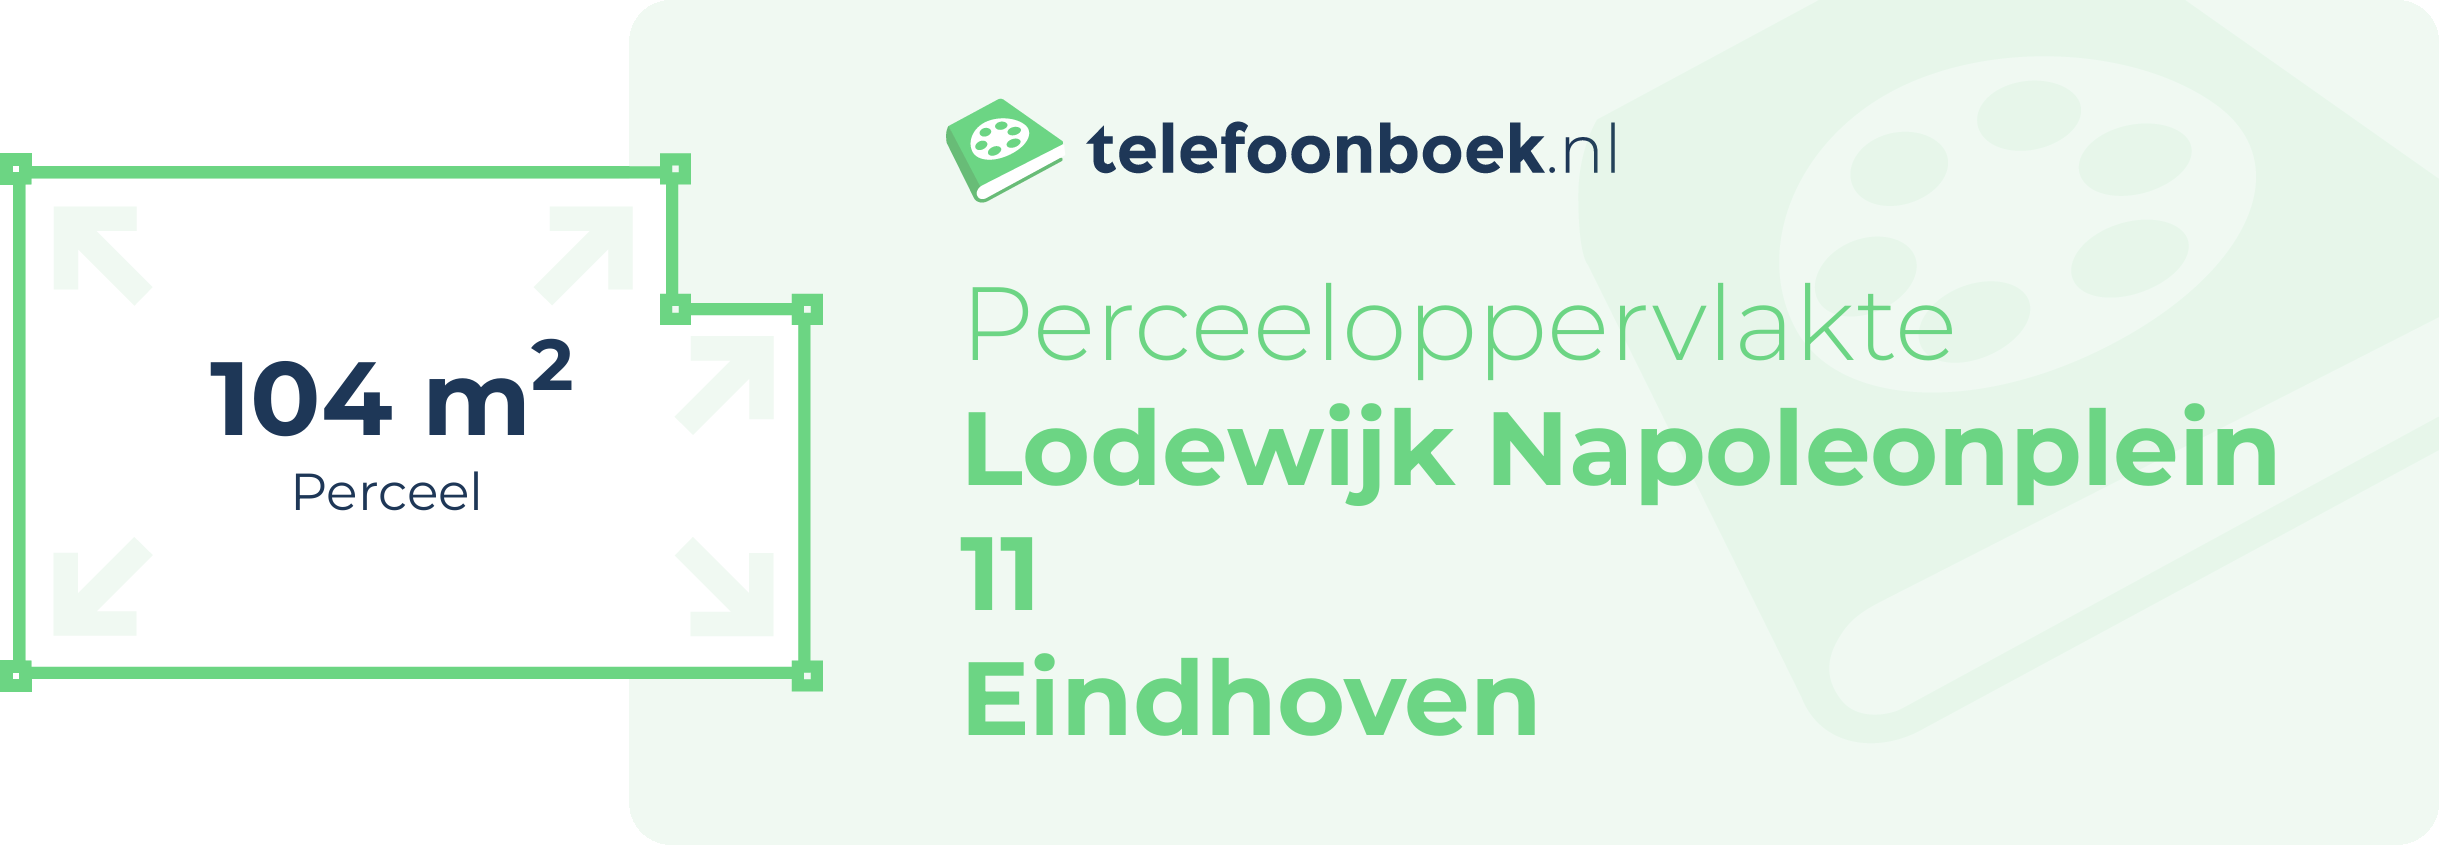 Perceeloppervlakte Lodewijk Napoleonplein 11 Eindhoven